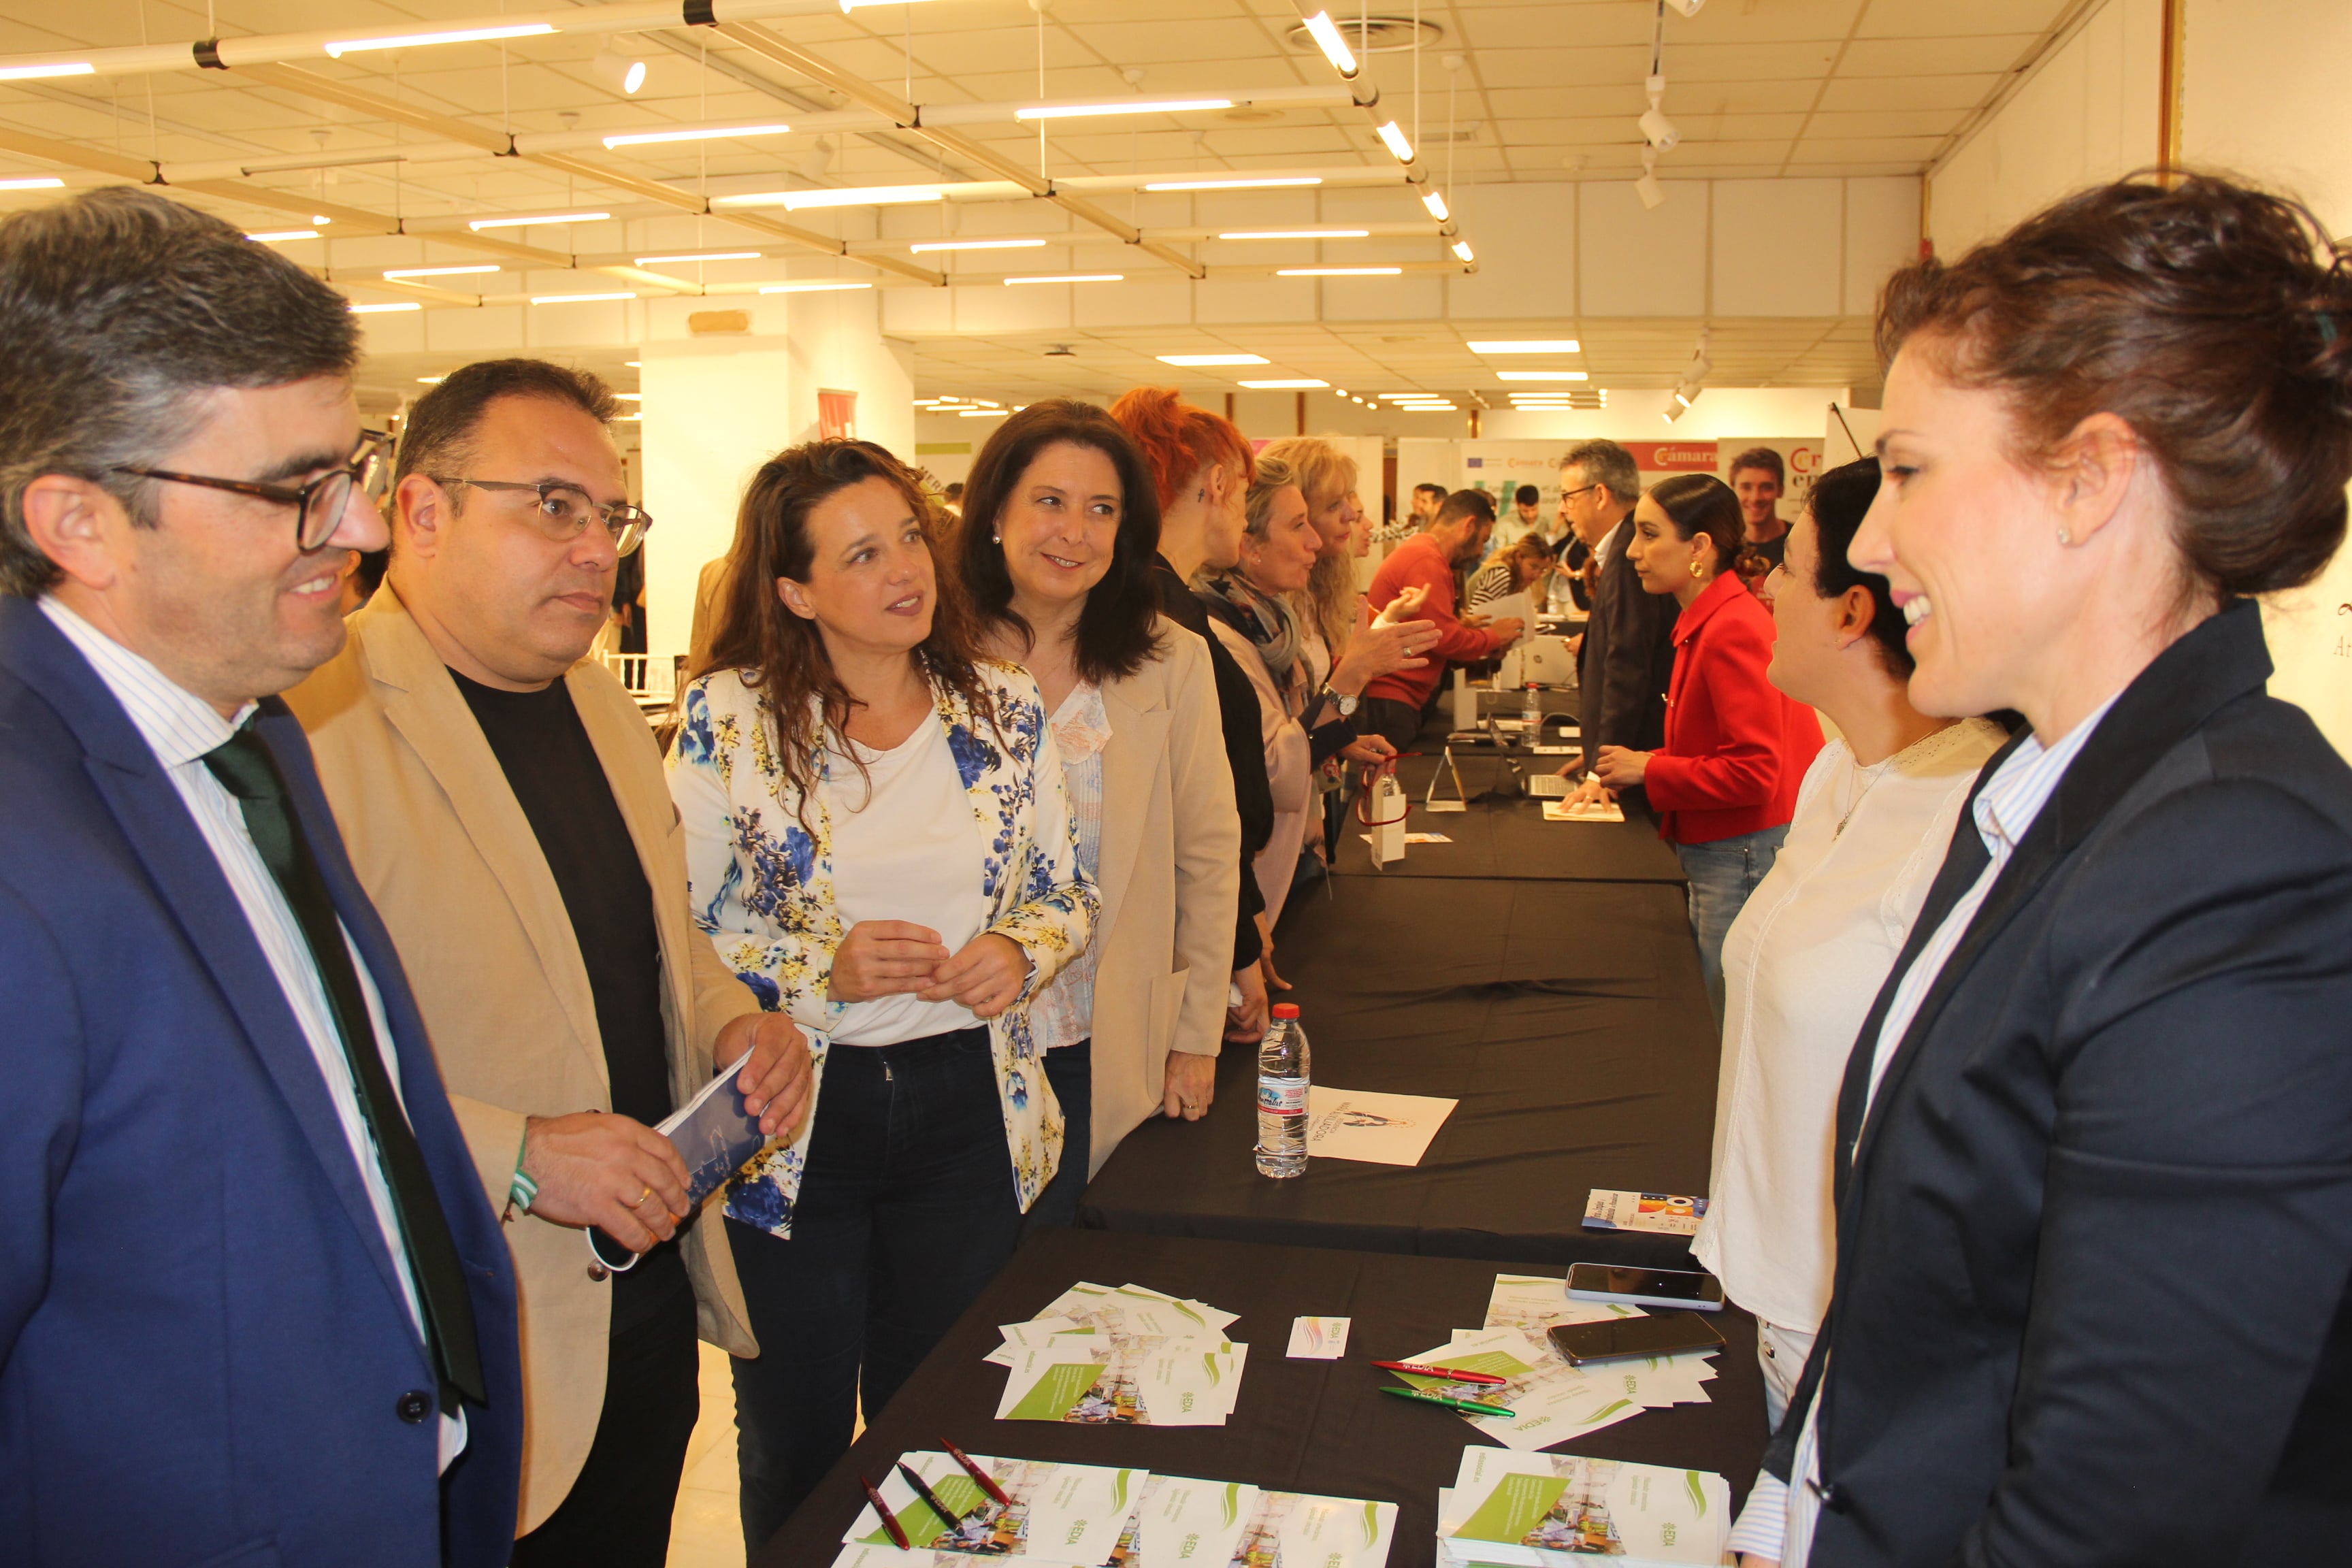 La I Feria de Empleo y Emprendimiento de Almuñécar reúne a grandes empresas con emprendedores y demandantes de empleo